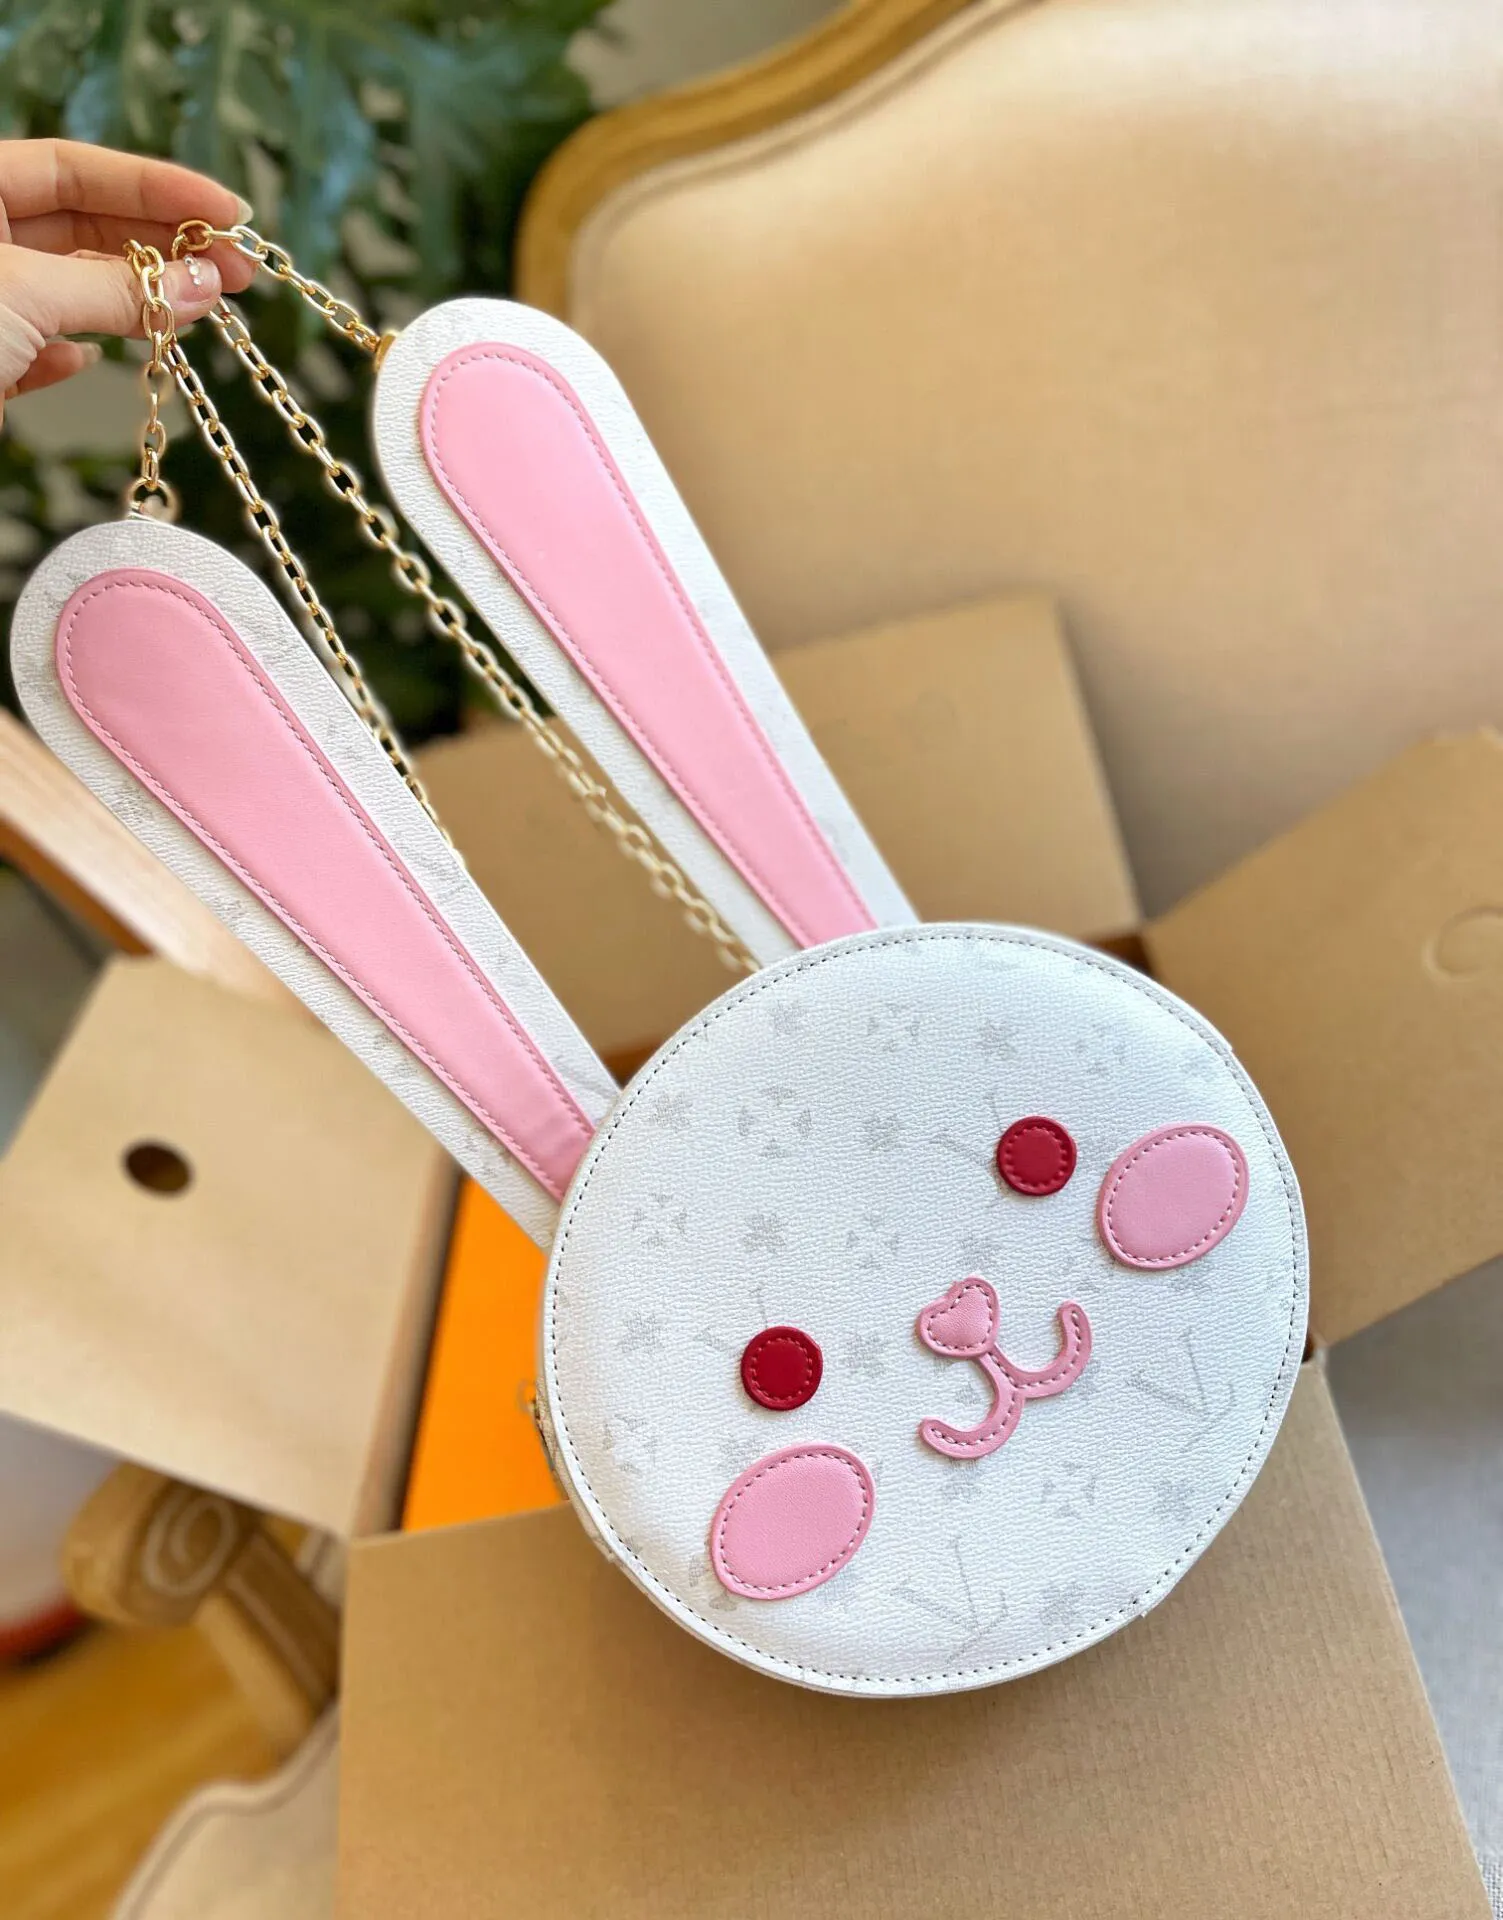 TZ Kadın Tasarımcı Markası Sevimli Tavşan Crossbody Çanta Tavşan şekilli sırt çantası, harf deseni çıkarılabilir ayarlanabilir zincir omuz kayışı torbaları ile